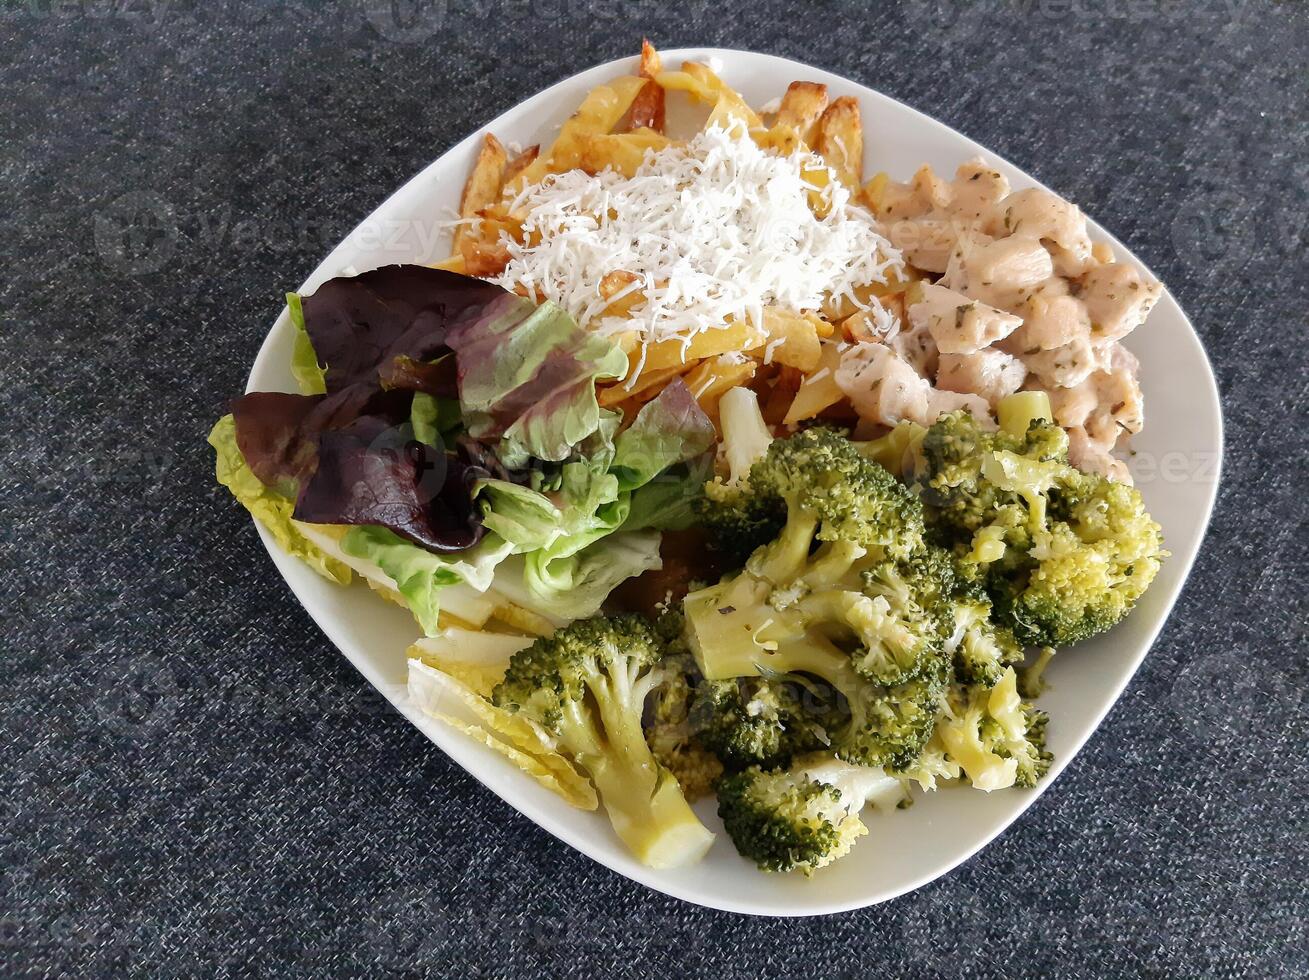 fait maison grillé poulet avec français frites, brocoli, fromage et vert salade, servi sur une blanc assiette photo